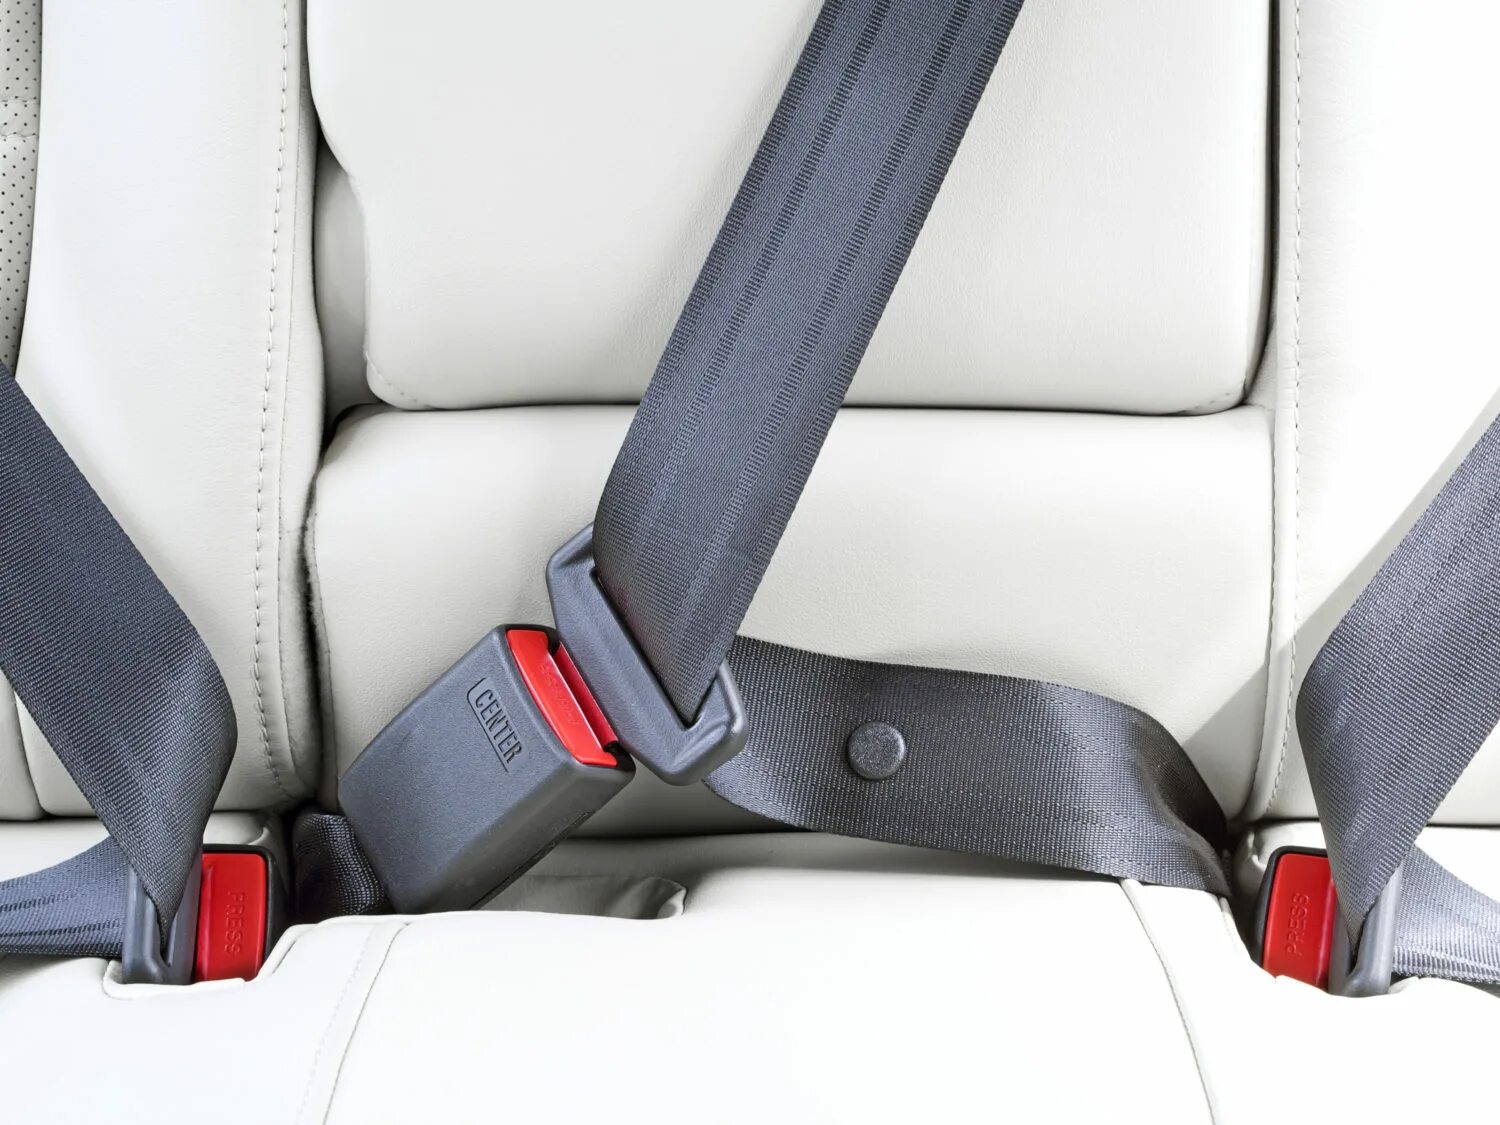 Ремень безопасности высота. Seat Belt, Safety 95.241-210. Wear a Seat Belt. VAG 8 гр., VW, Seat Belt. Ремни безопасности пассажиров задних рядов т4.